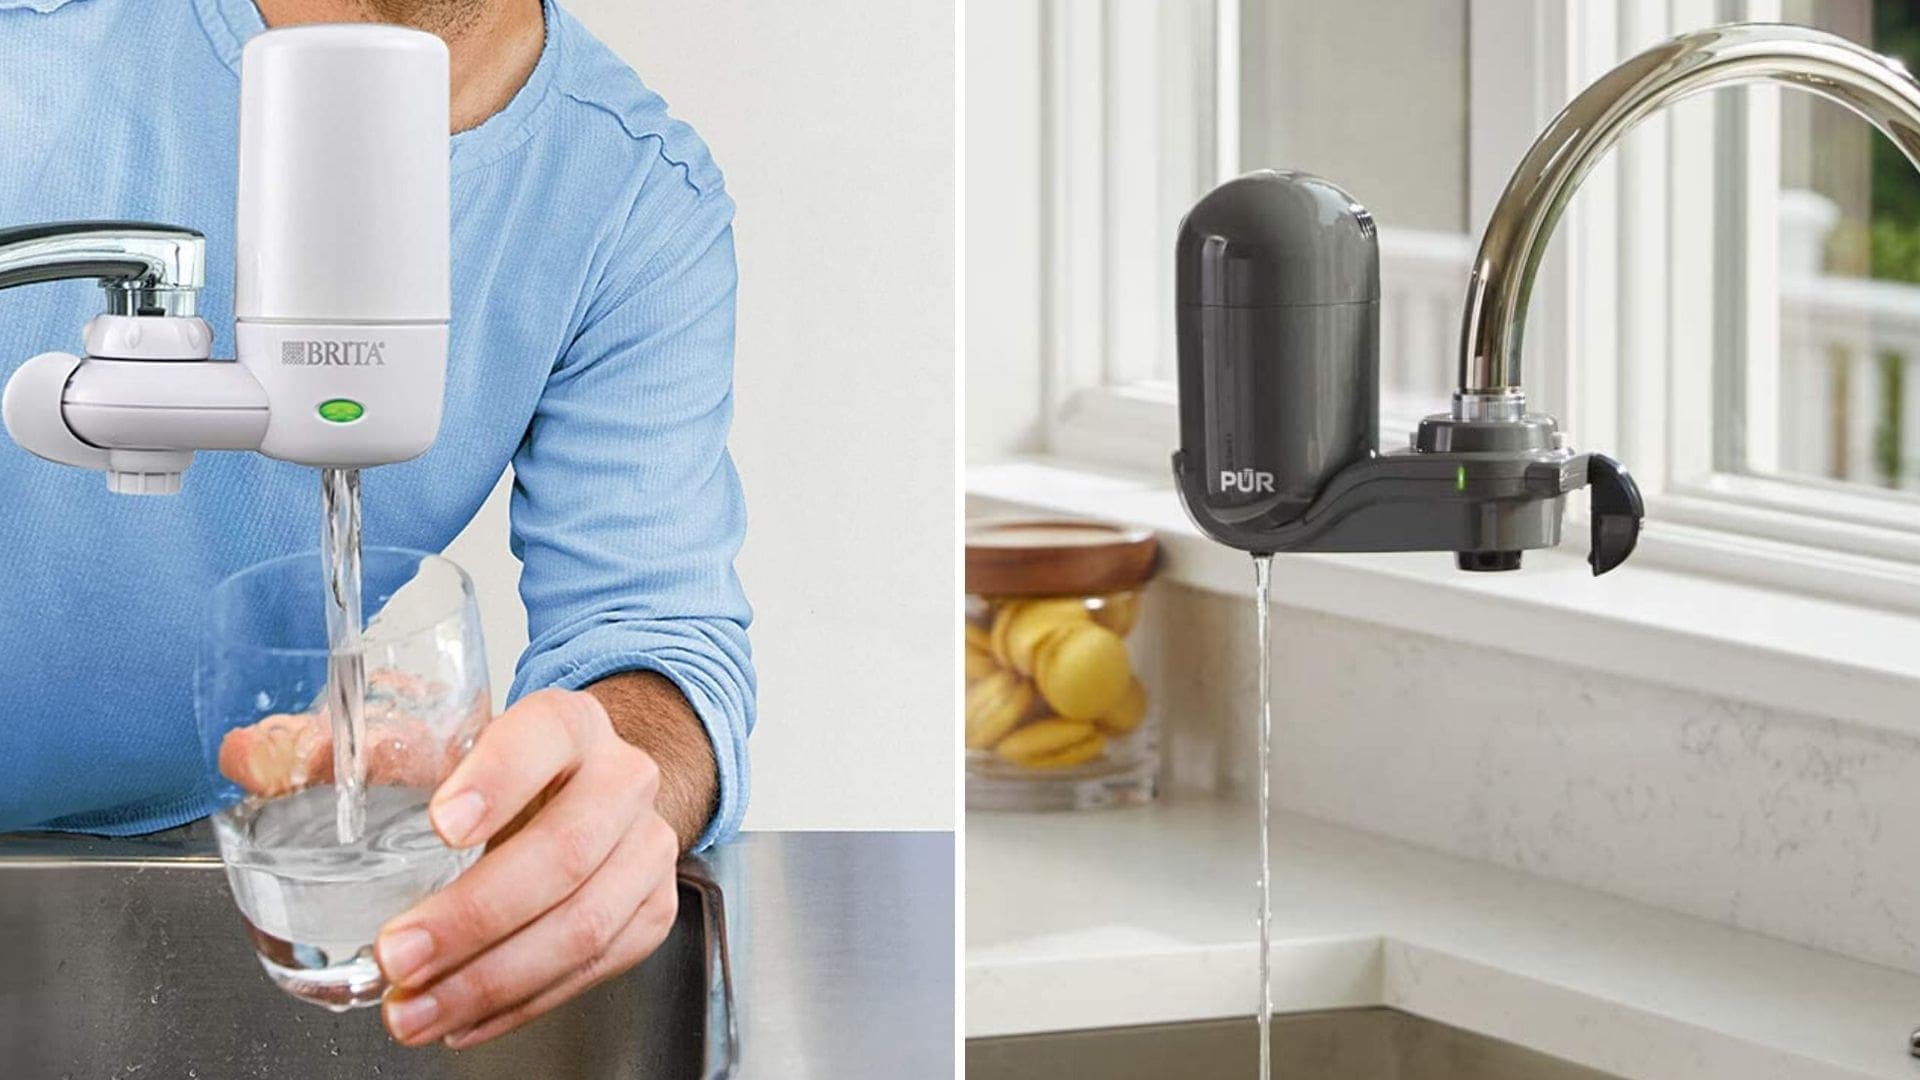 pur kitchen sink faucet